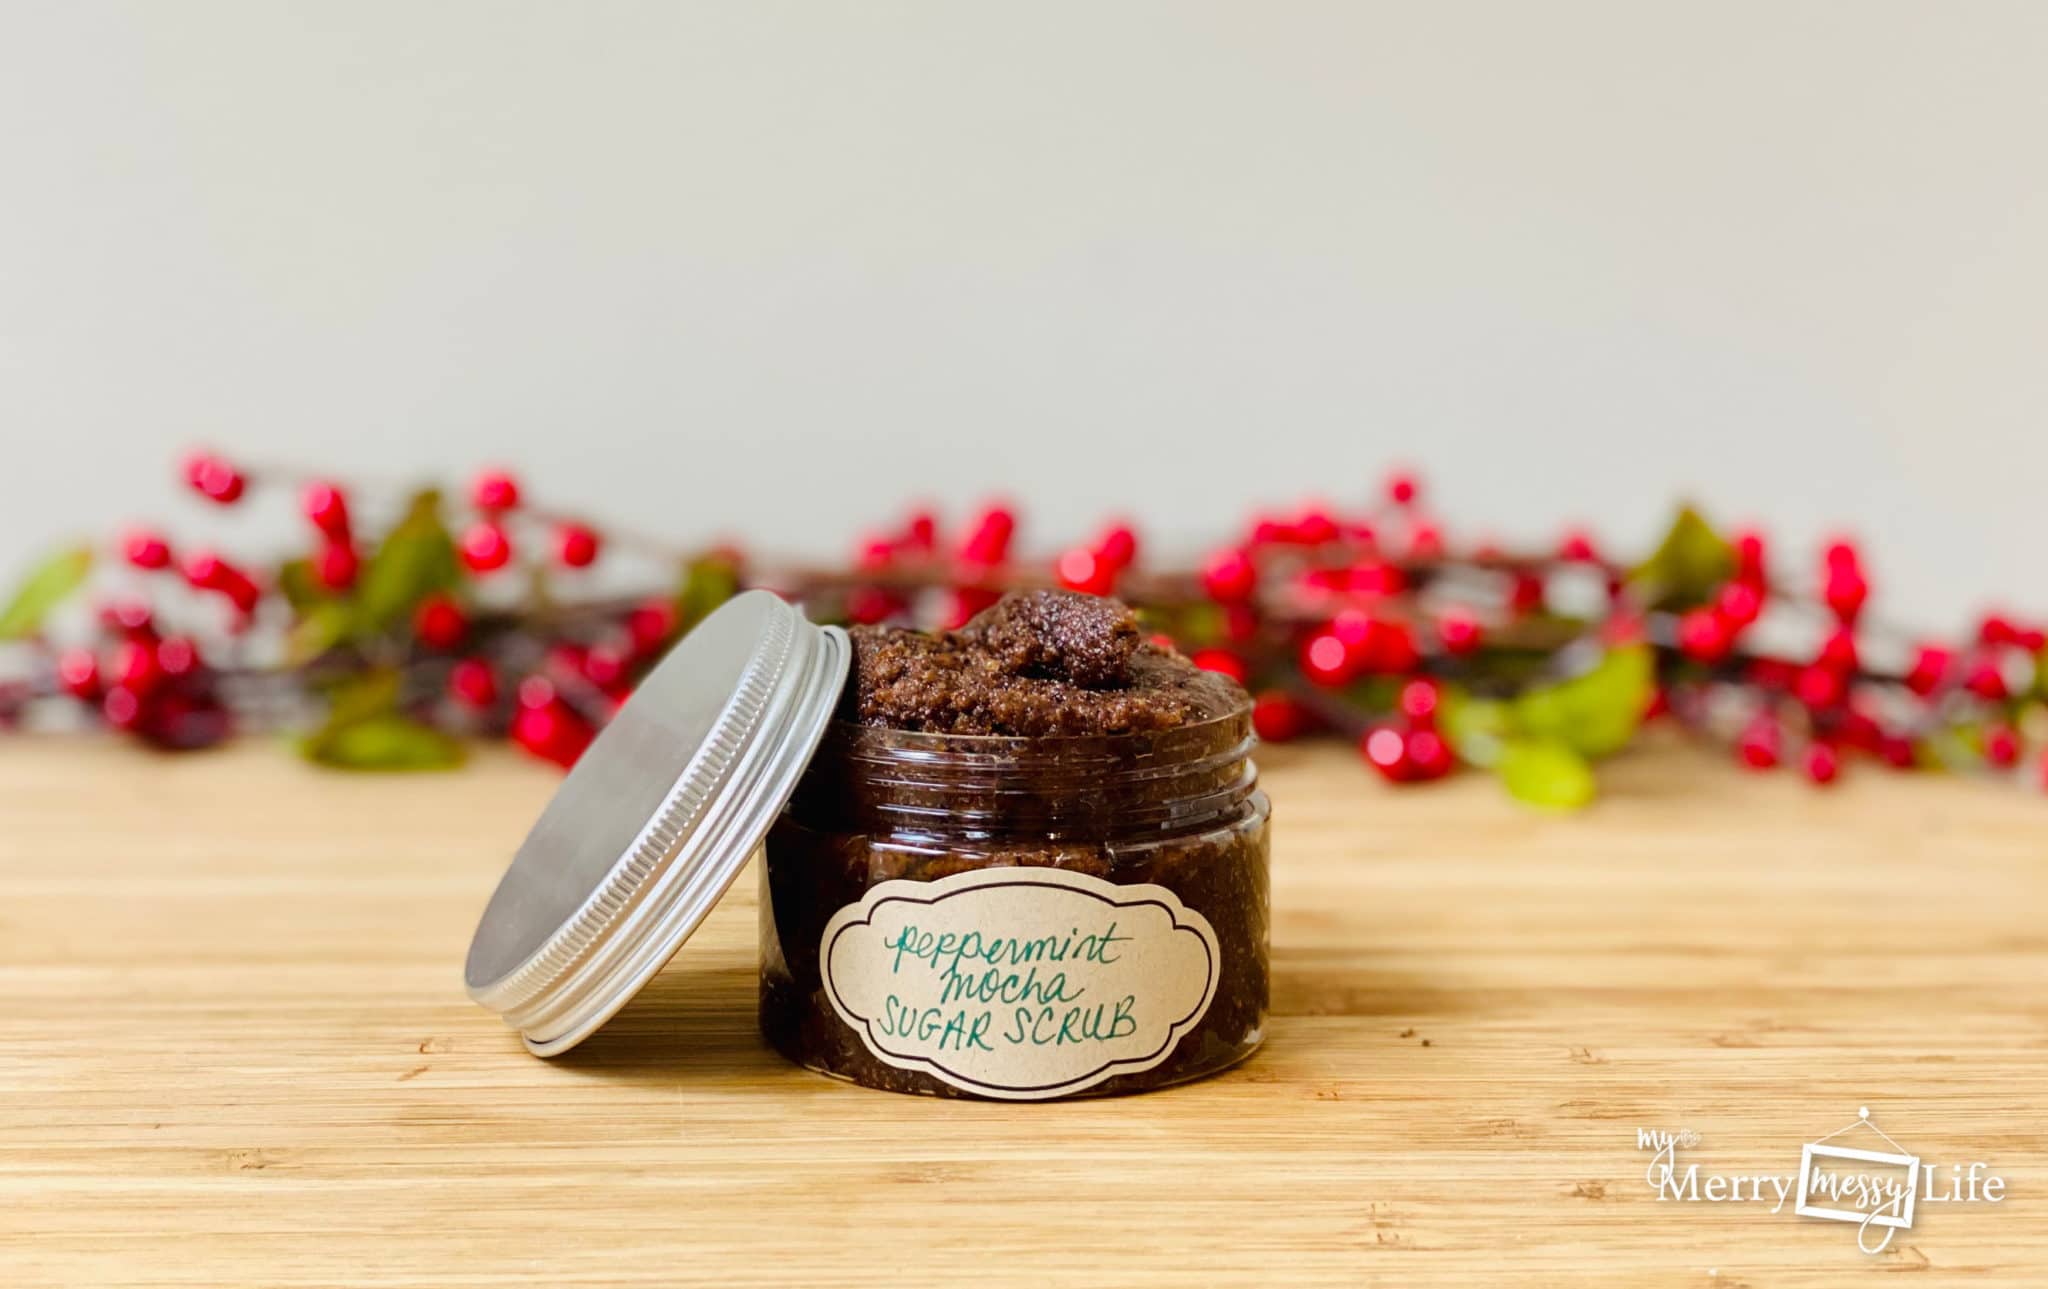 Peppermint Mocha Sugar Scrub Recipe – Great for Gifts!